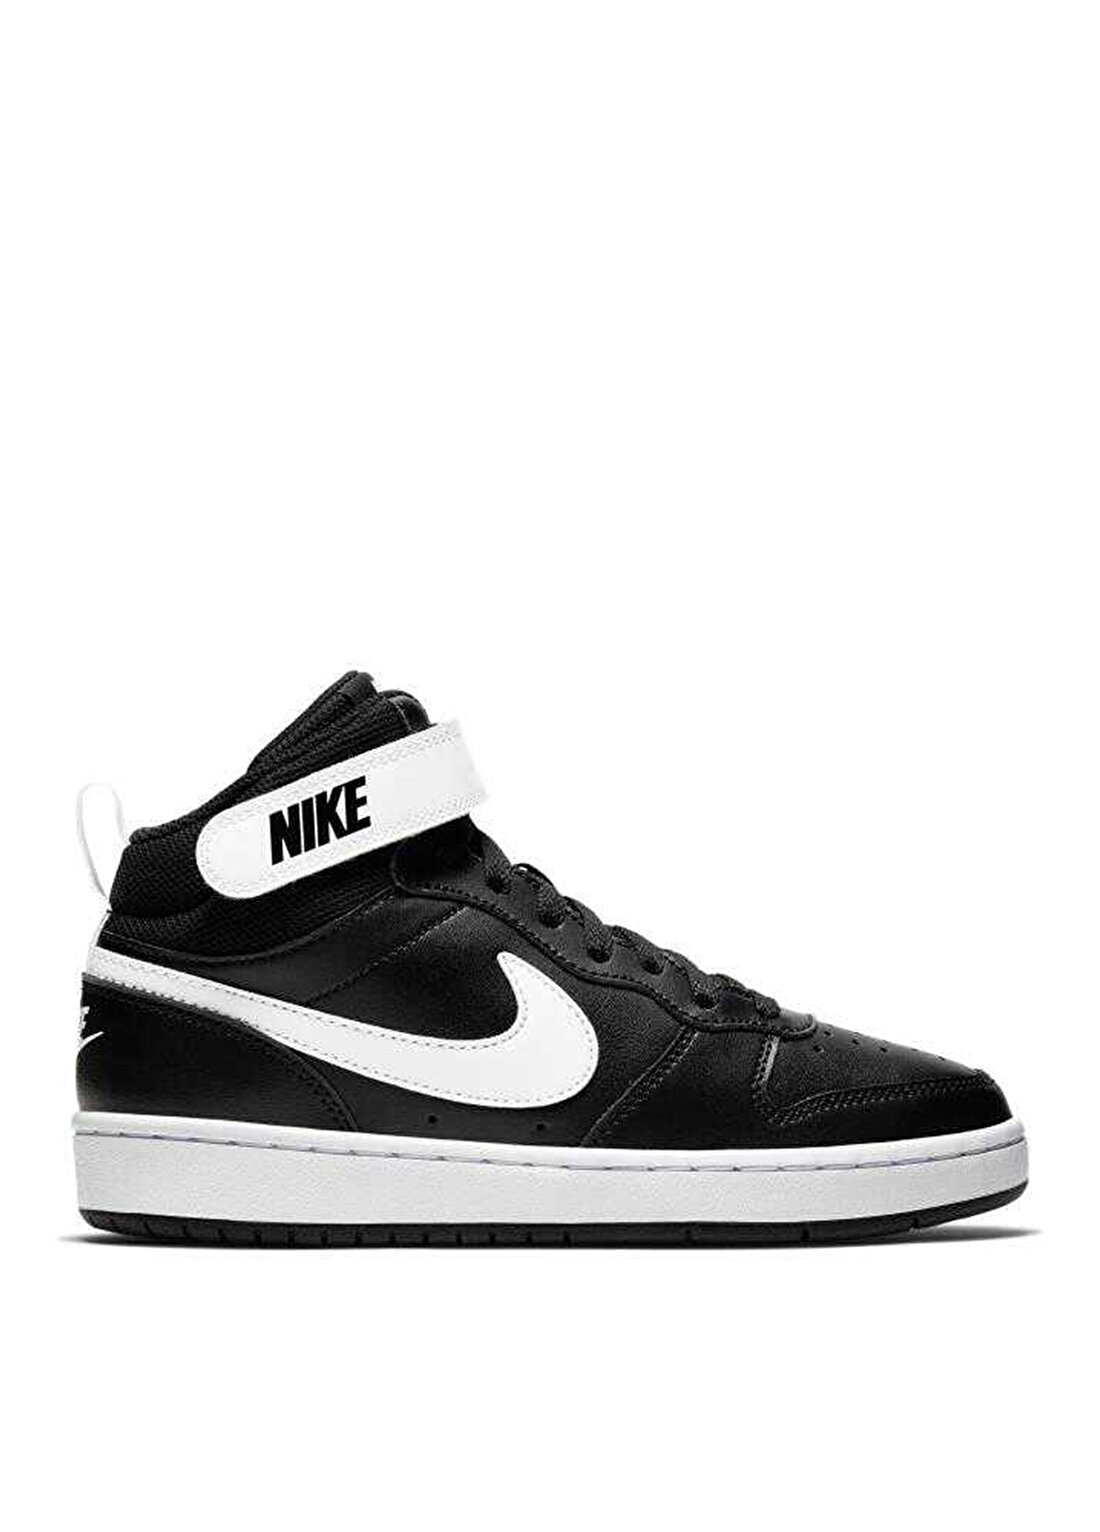 Nike Çocuk Siyah - Gri - Gümüş Yürüyüş Ayakkabısı CD7782-010 COURT BOROUGH MID 2 (GS)